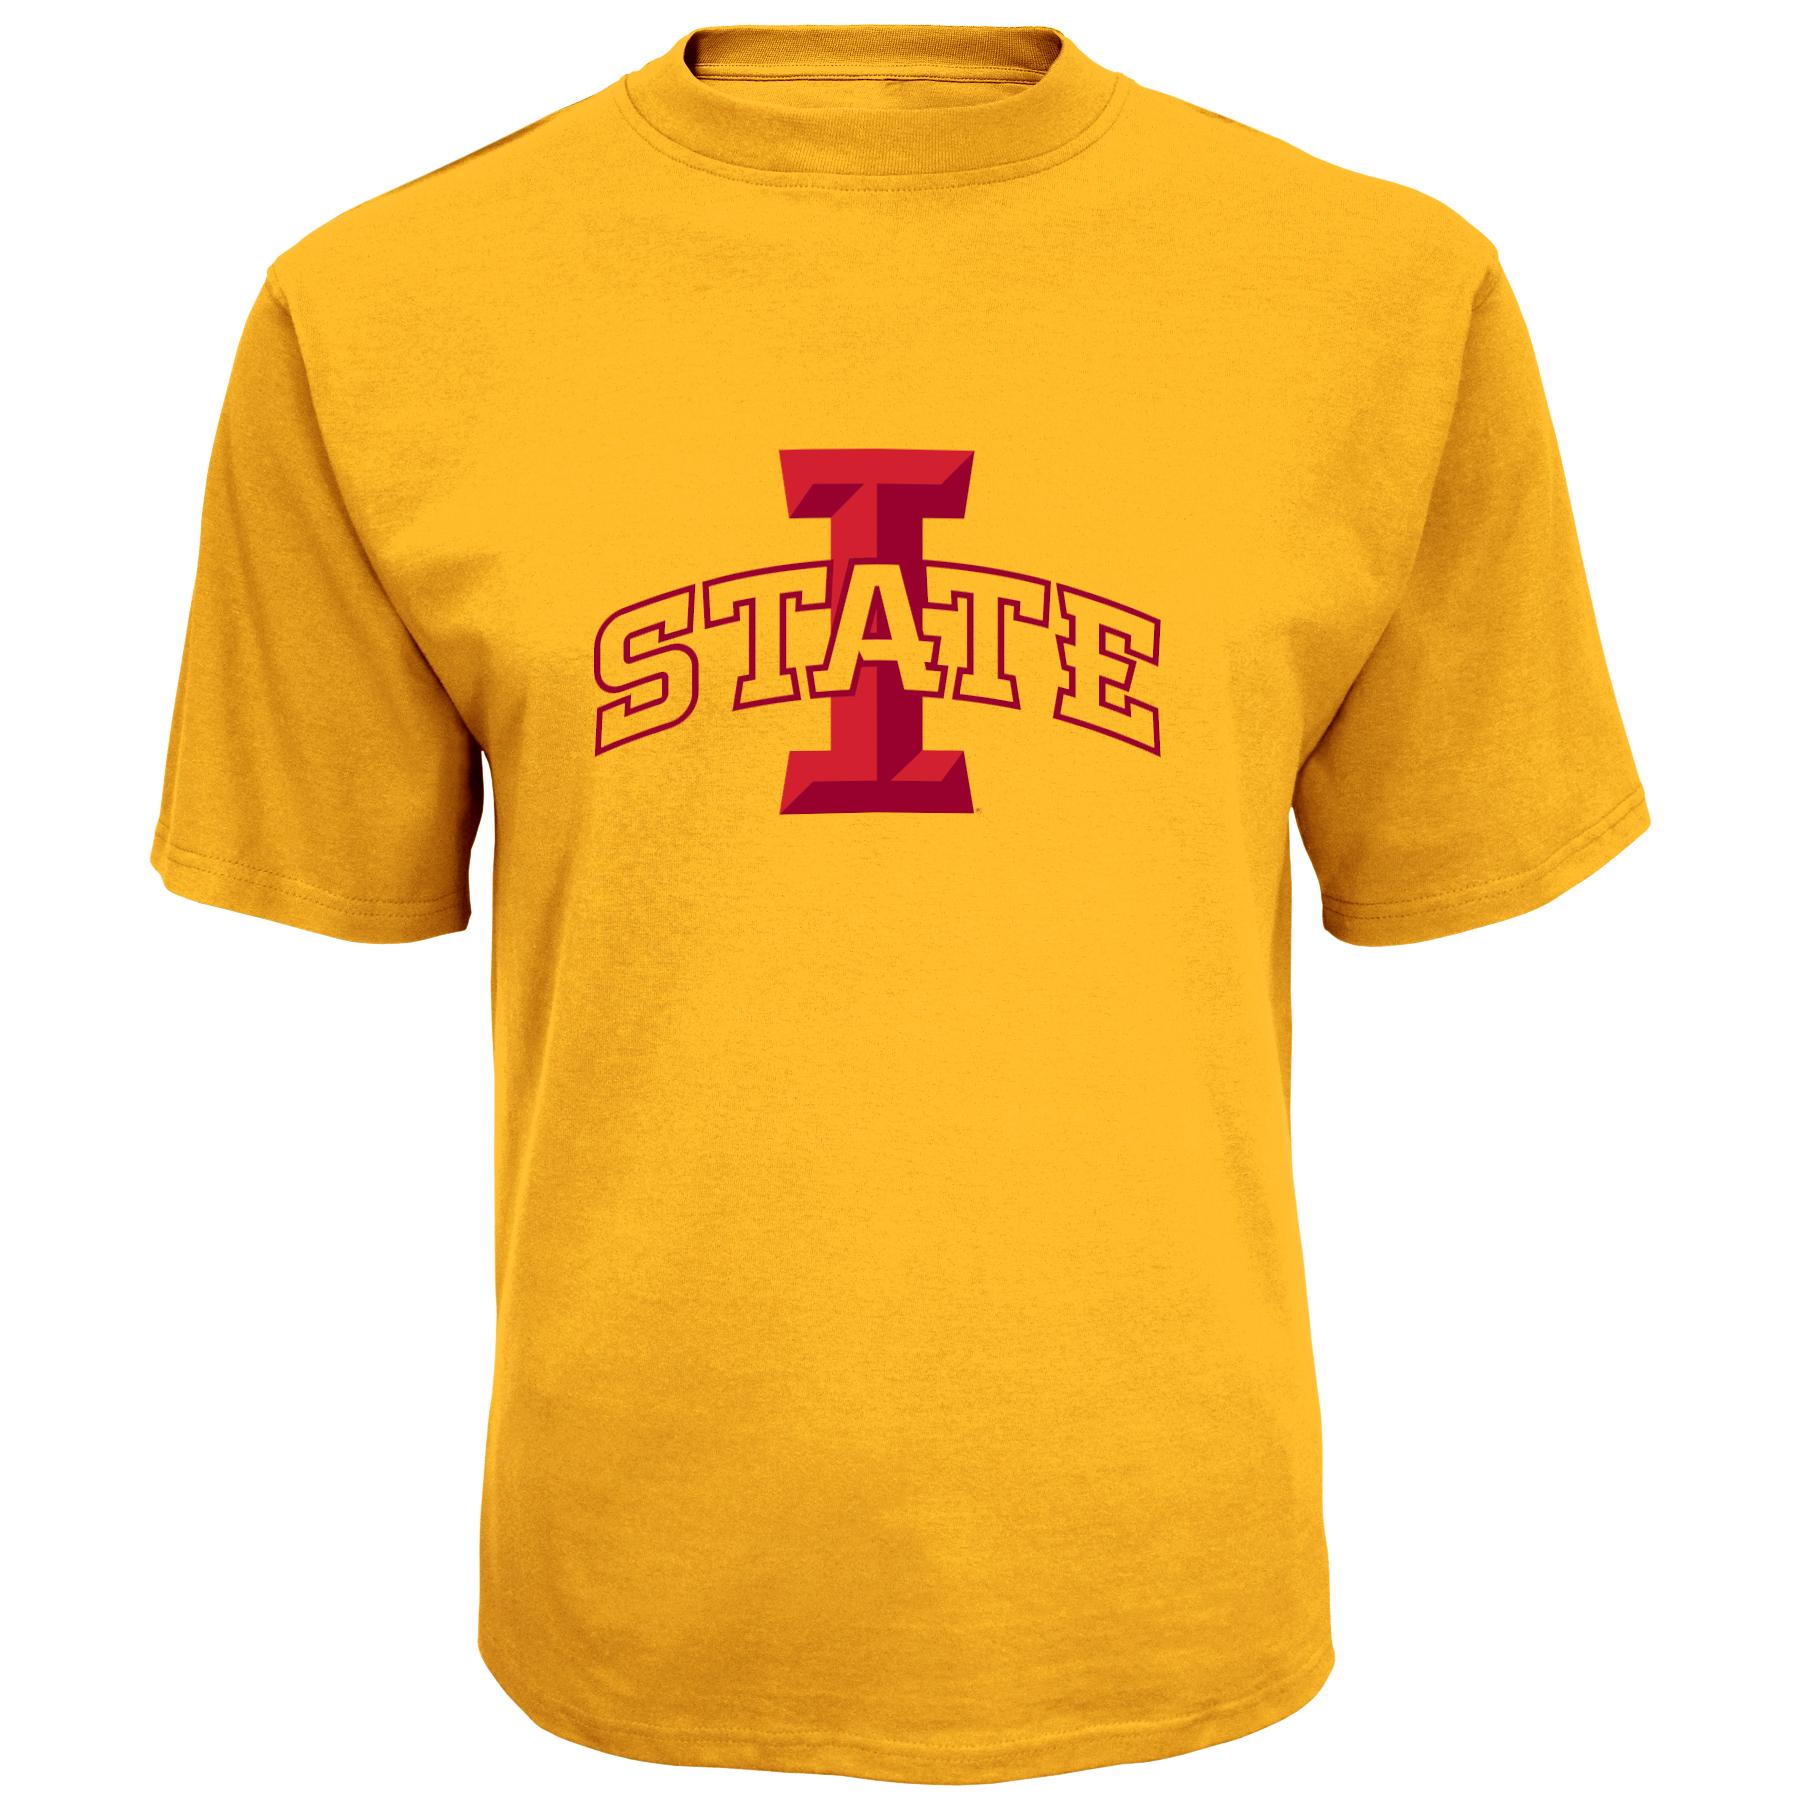 NCAA Men's Graphic T-Shirt - Iowa State Cyclones